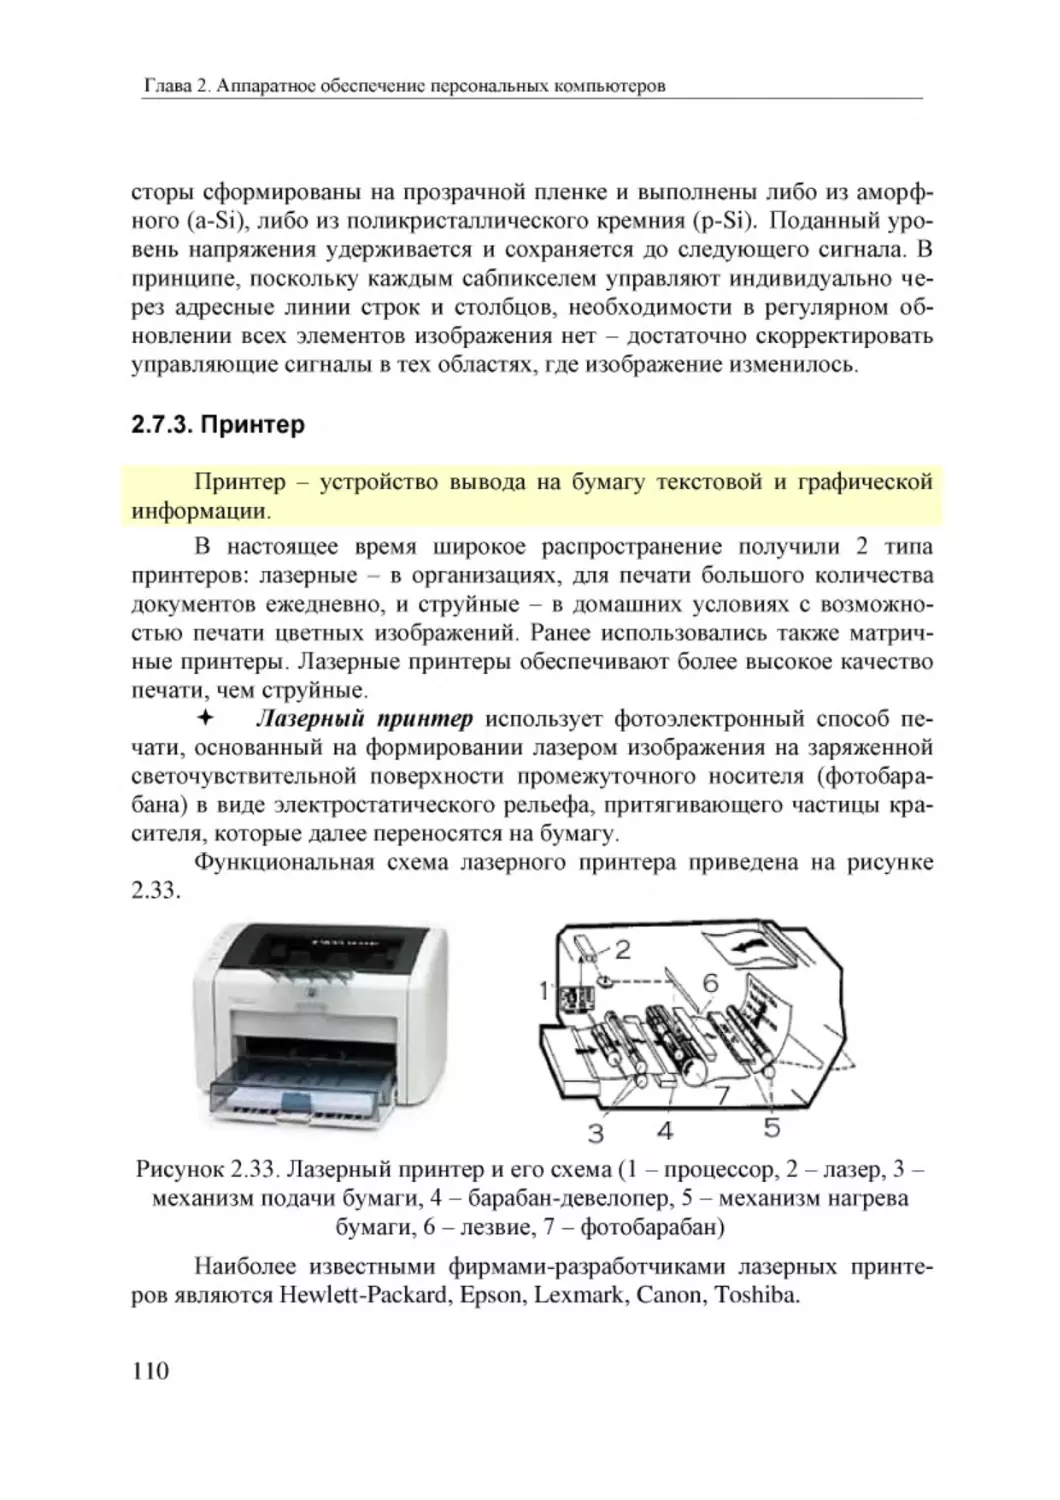 Informatika_Uchebnik_dlya_vuzov_2010 110